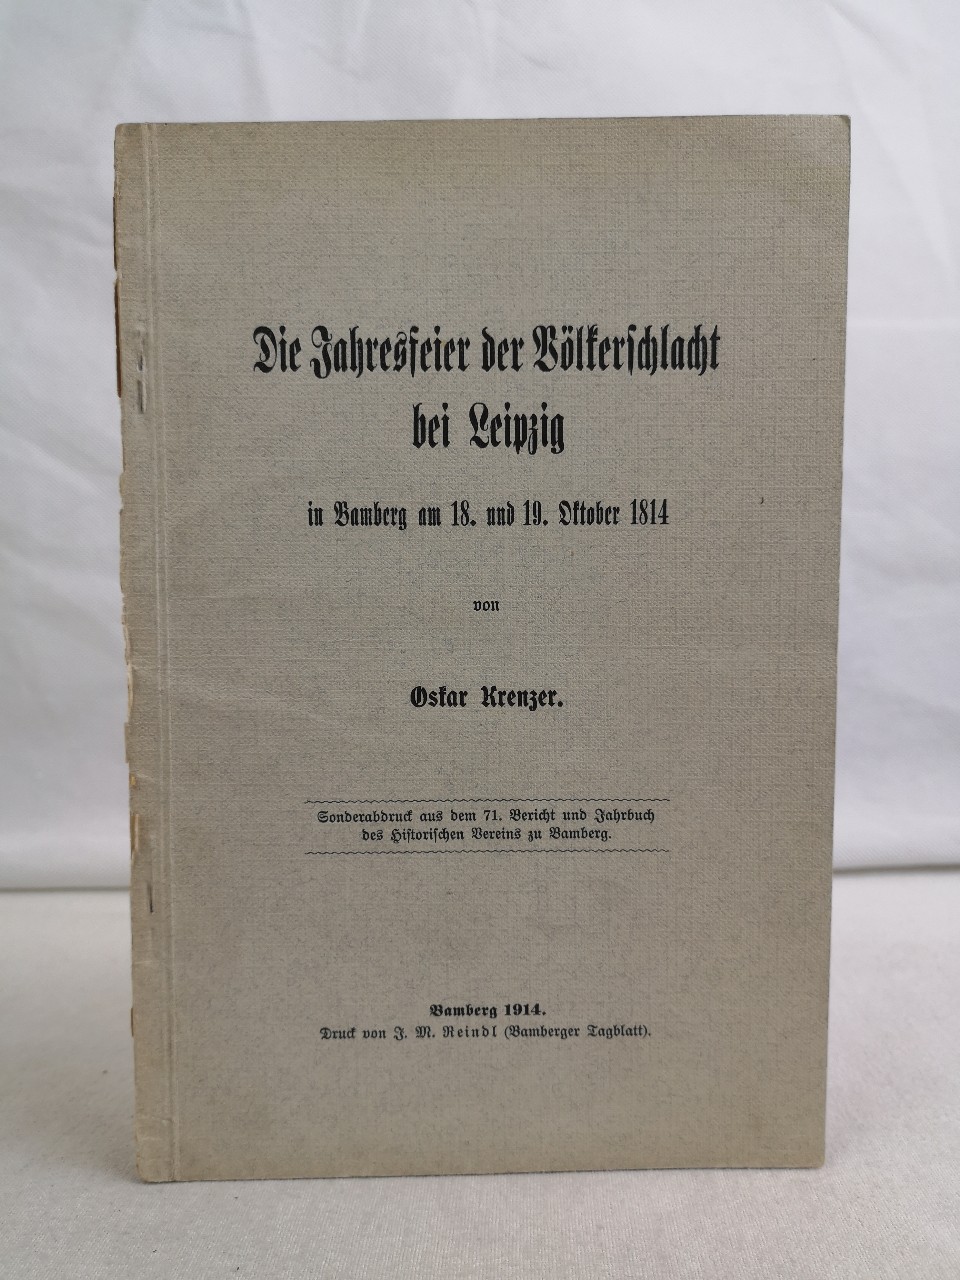 Krenzer, Oskar:  Die Jahresfeier der Vlkerschlacht bei Leipzig in Bamberg am 18. und 19. Oktober 1814. 